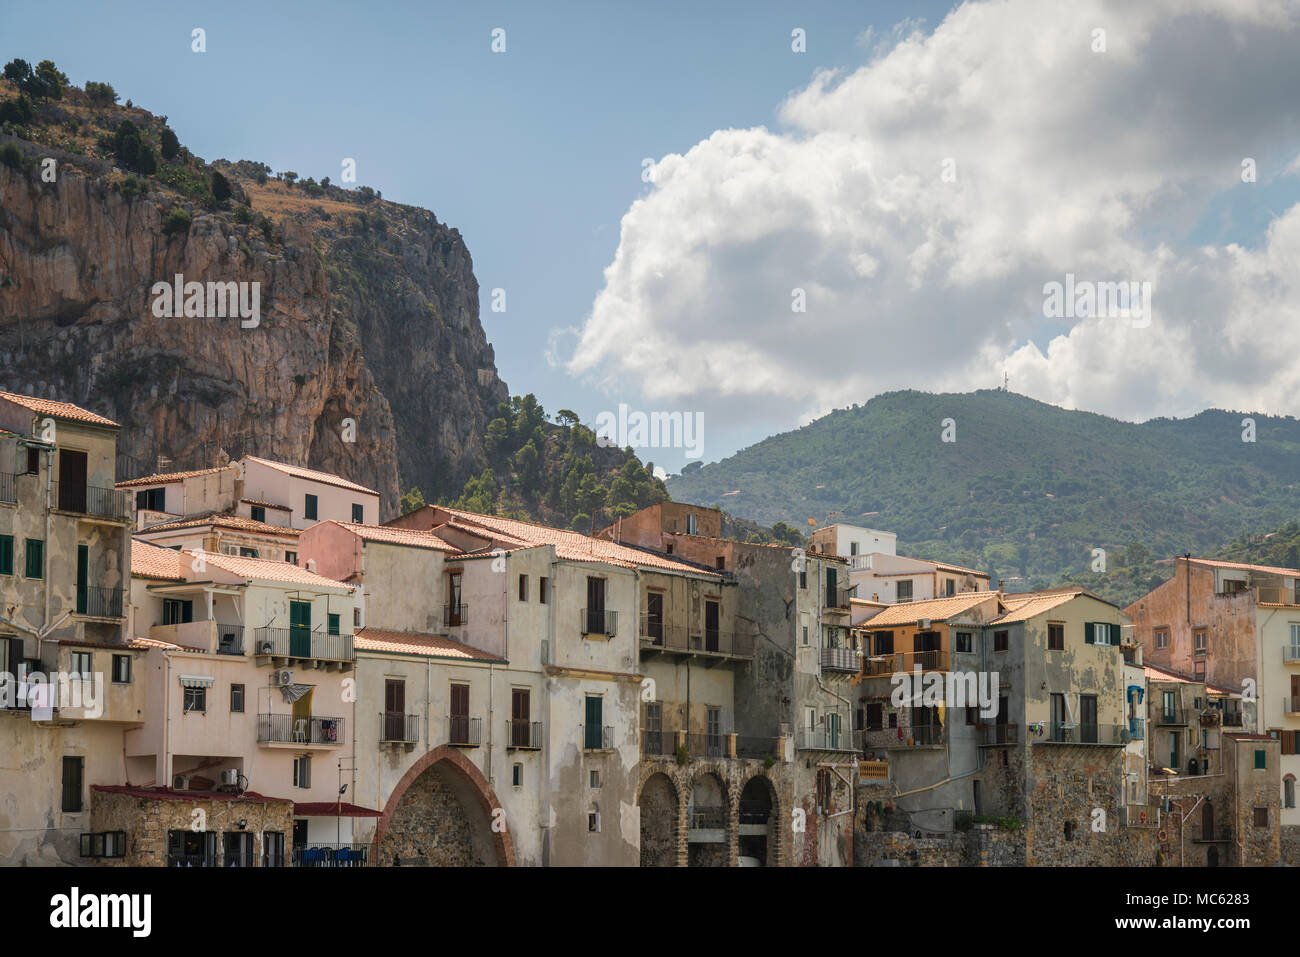 Edifici storici a Cefalu, Sicilia, Italia, con colline rocciose in background. Foto Stock